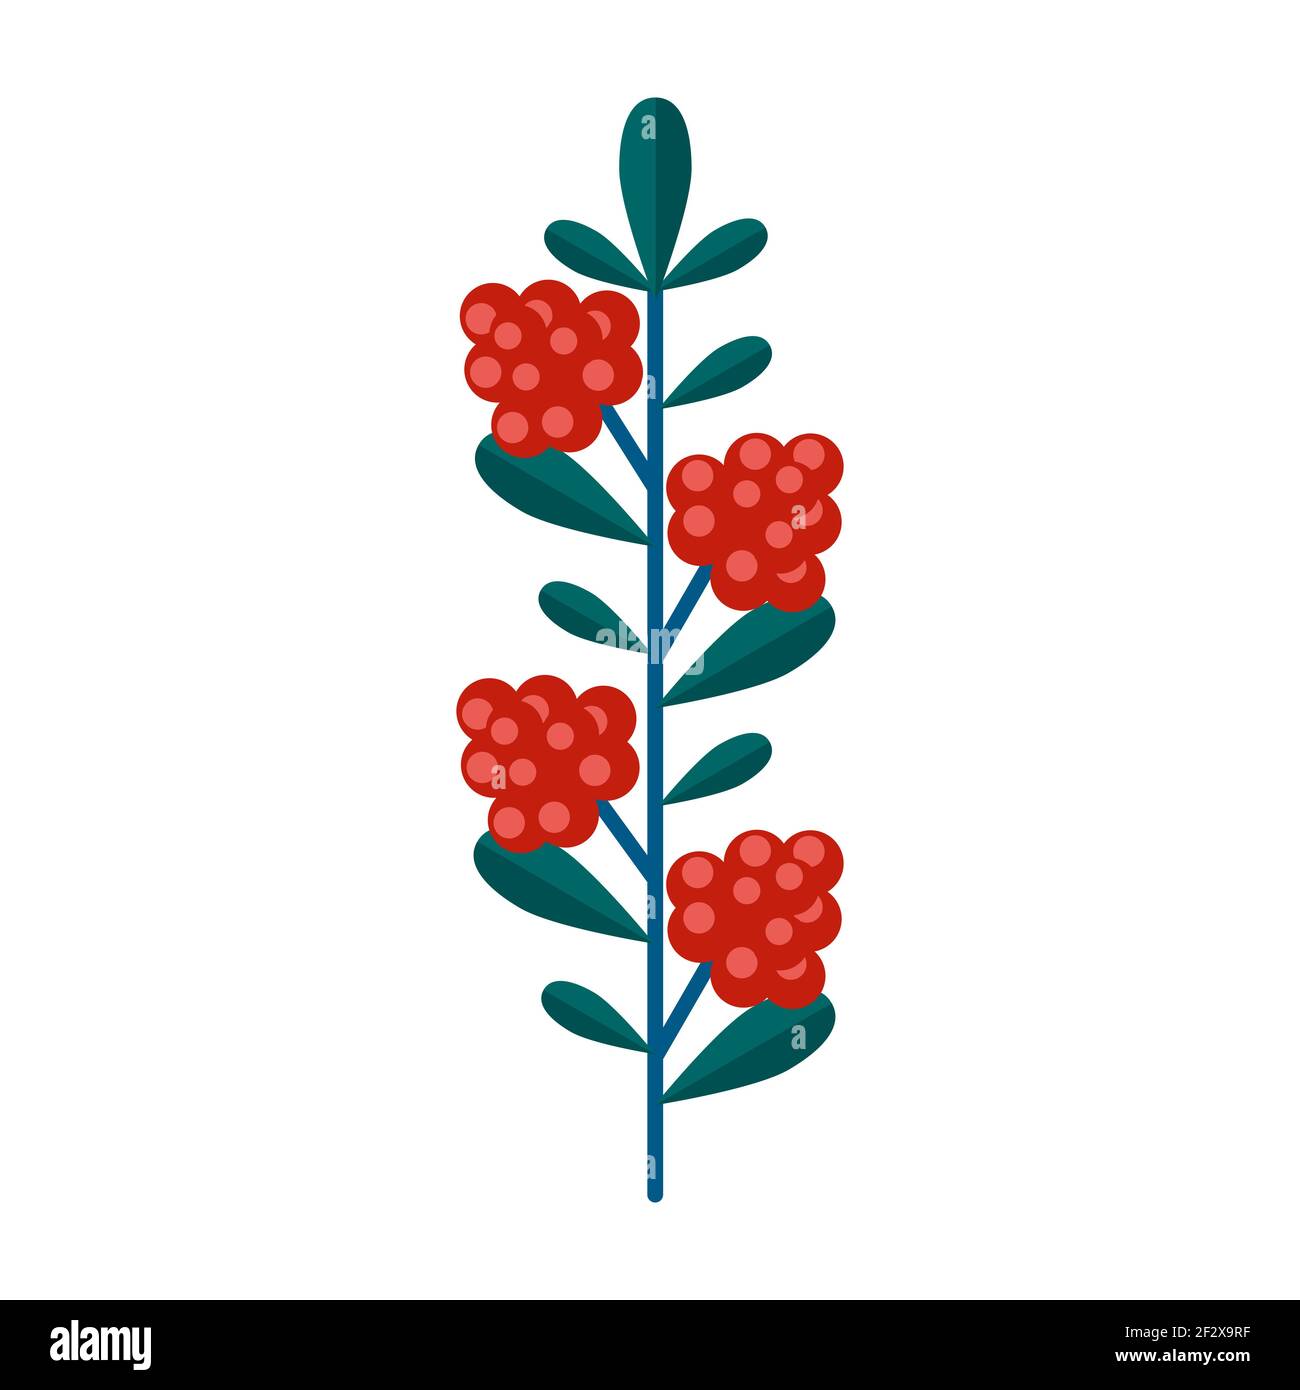 Simple branche verte minimaliste de framboise avec feuilles et baies rouges. Collection florale de plantes élégantes pour la décoration de saison . Icône stylisée Illustration de Vecteur